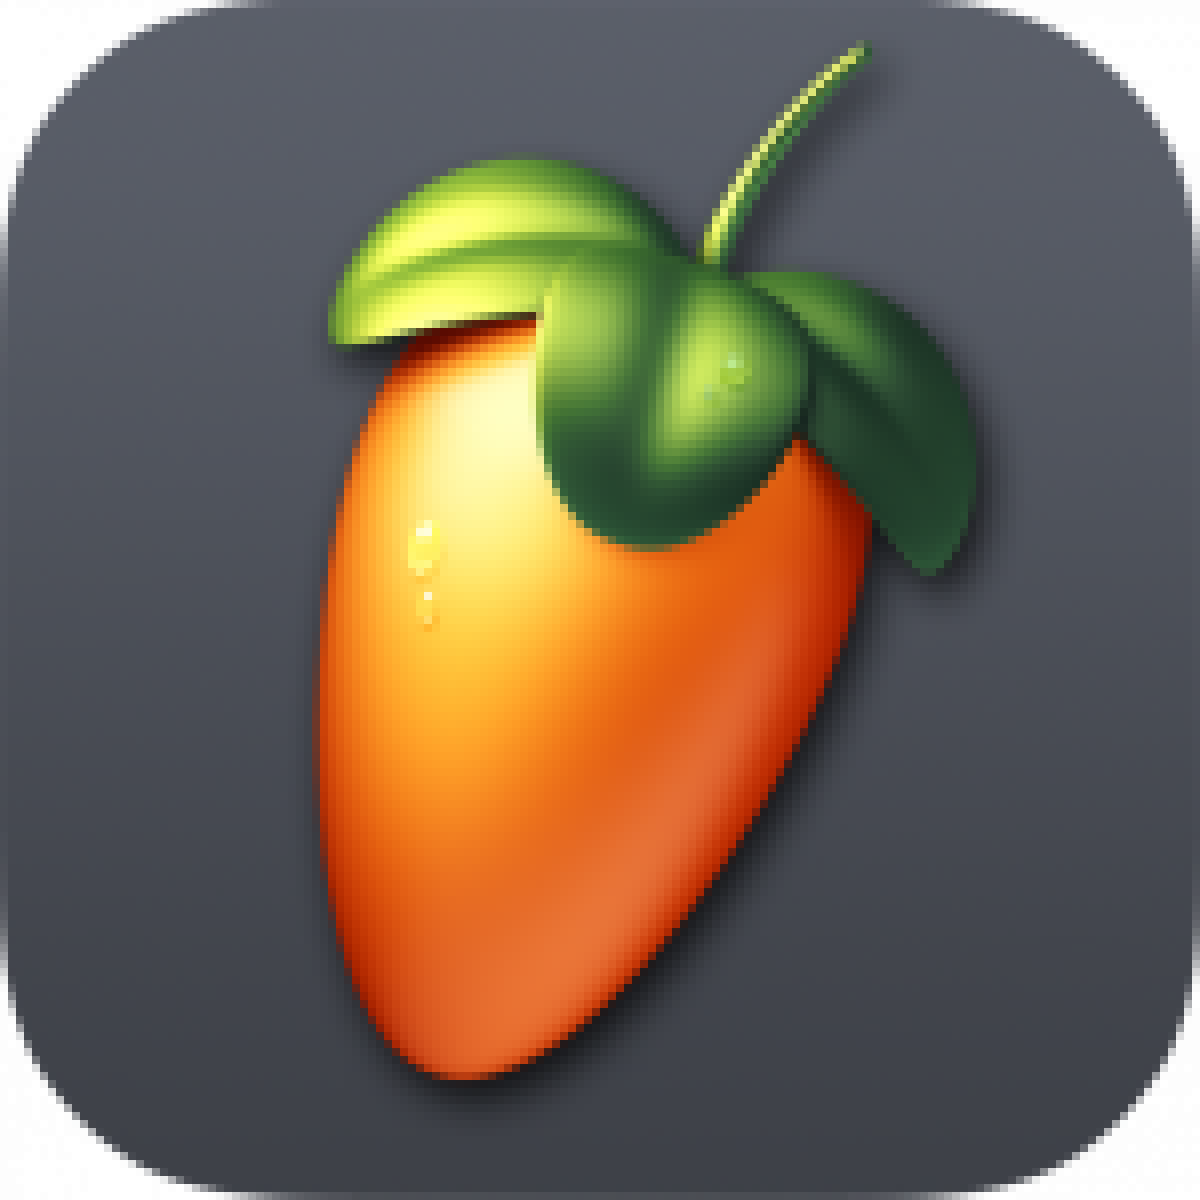 FL Studio Mobile Mod Apk + DataV3.5.14 Android